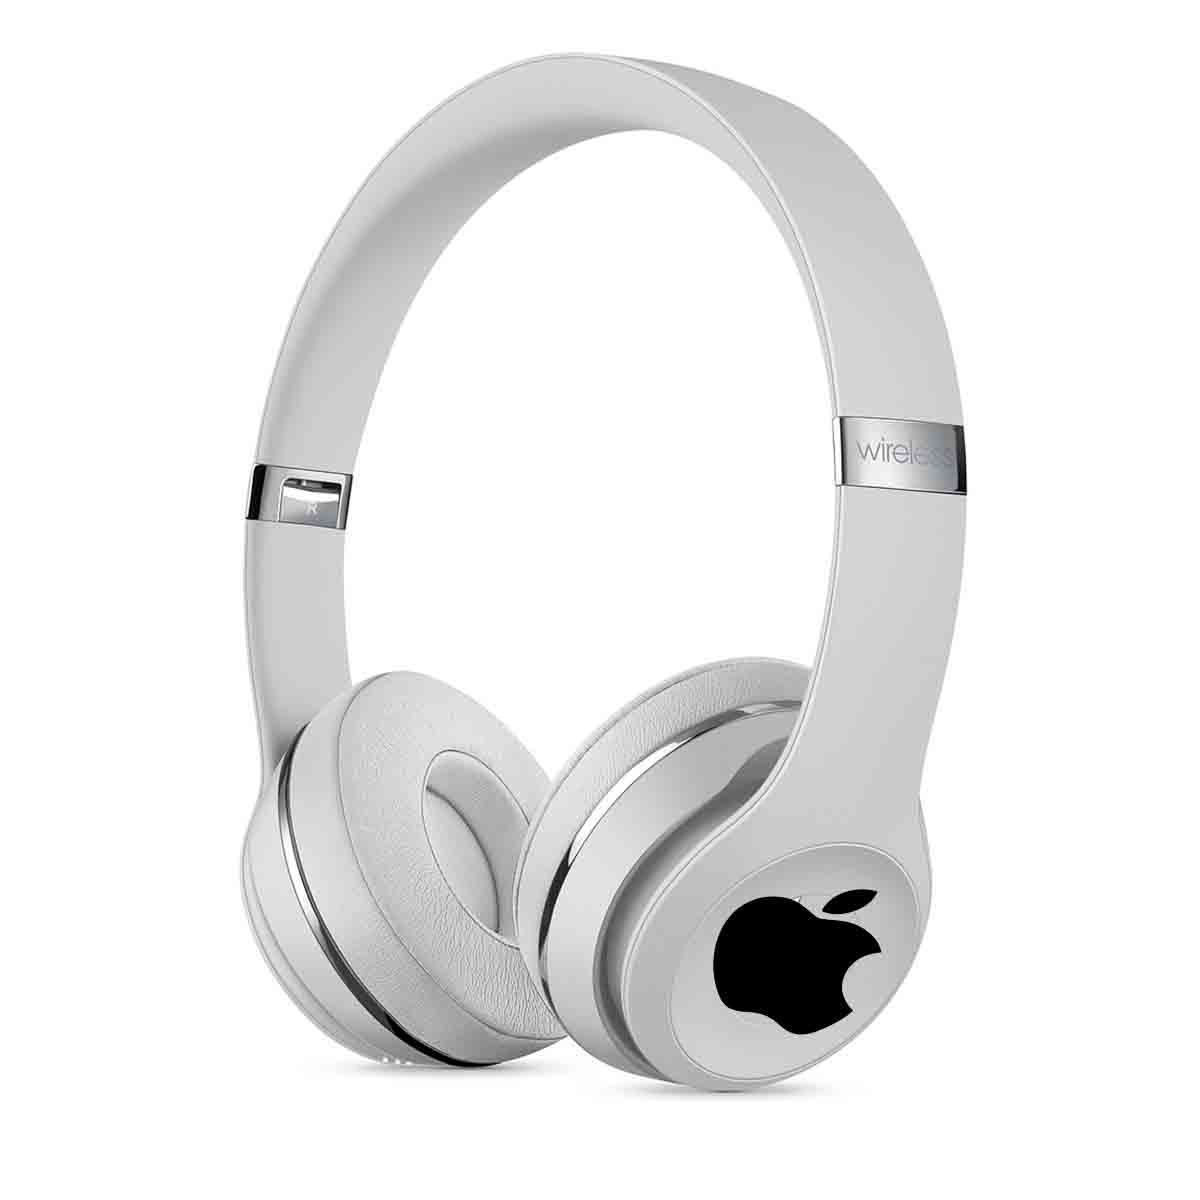 Logo d’Apple apposé sur un casque Beats pour illustrer cet article